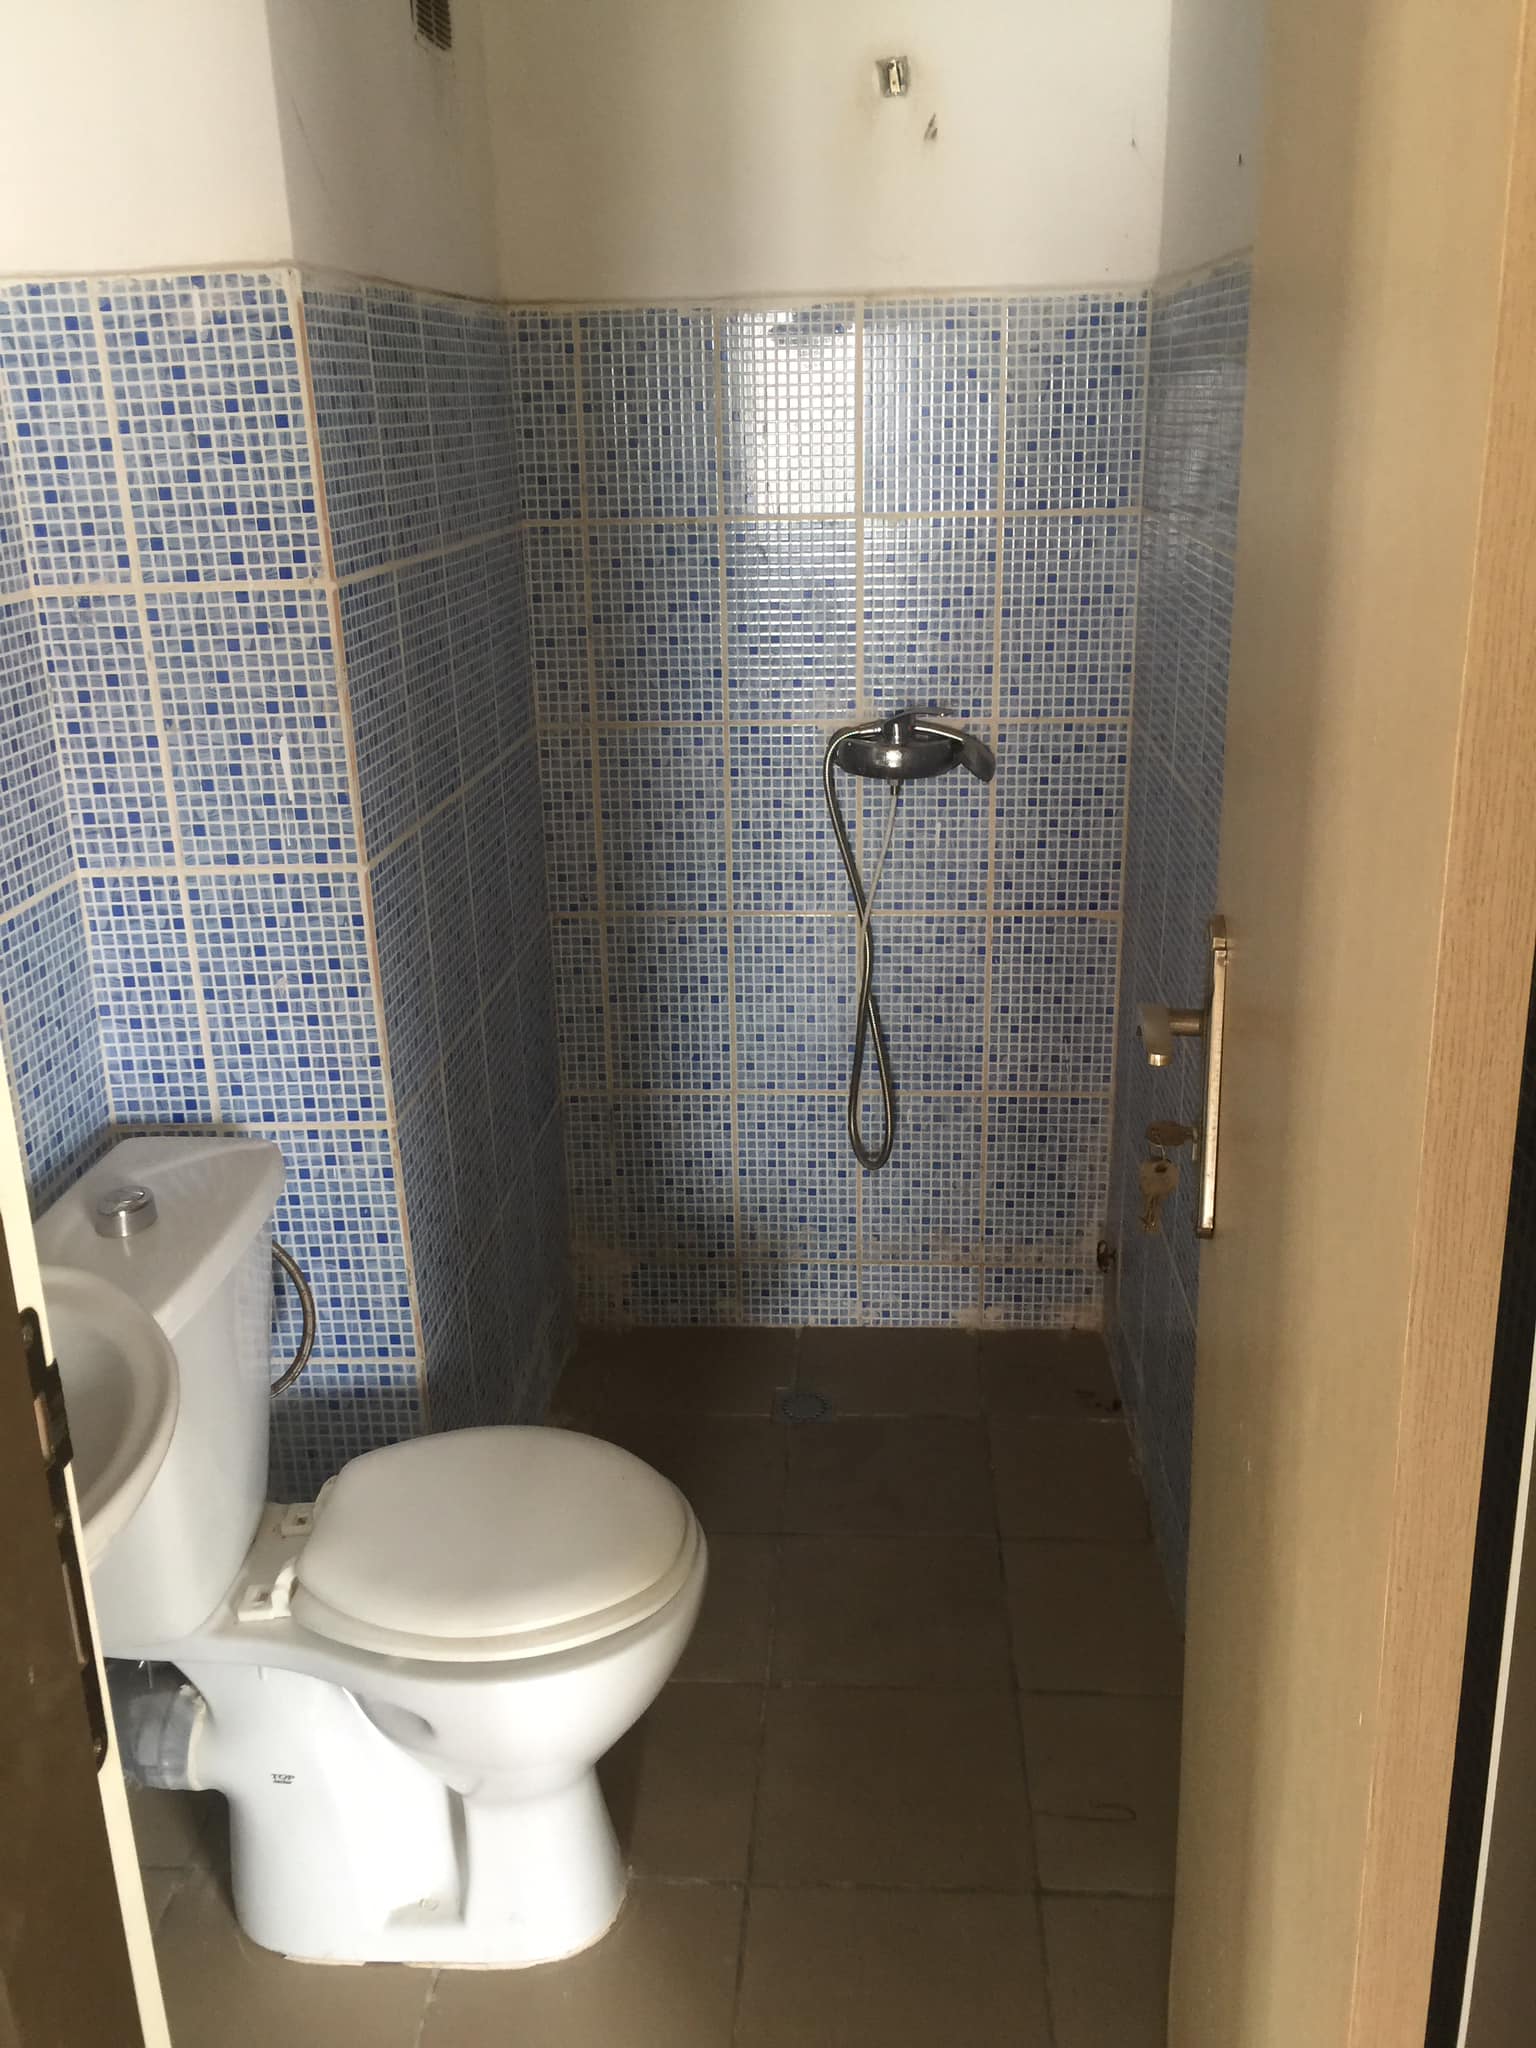 Maison à louer à Abobo  a Ndotré vers le stade olympique deux chambres  salon deux douche